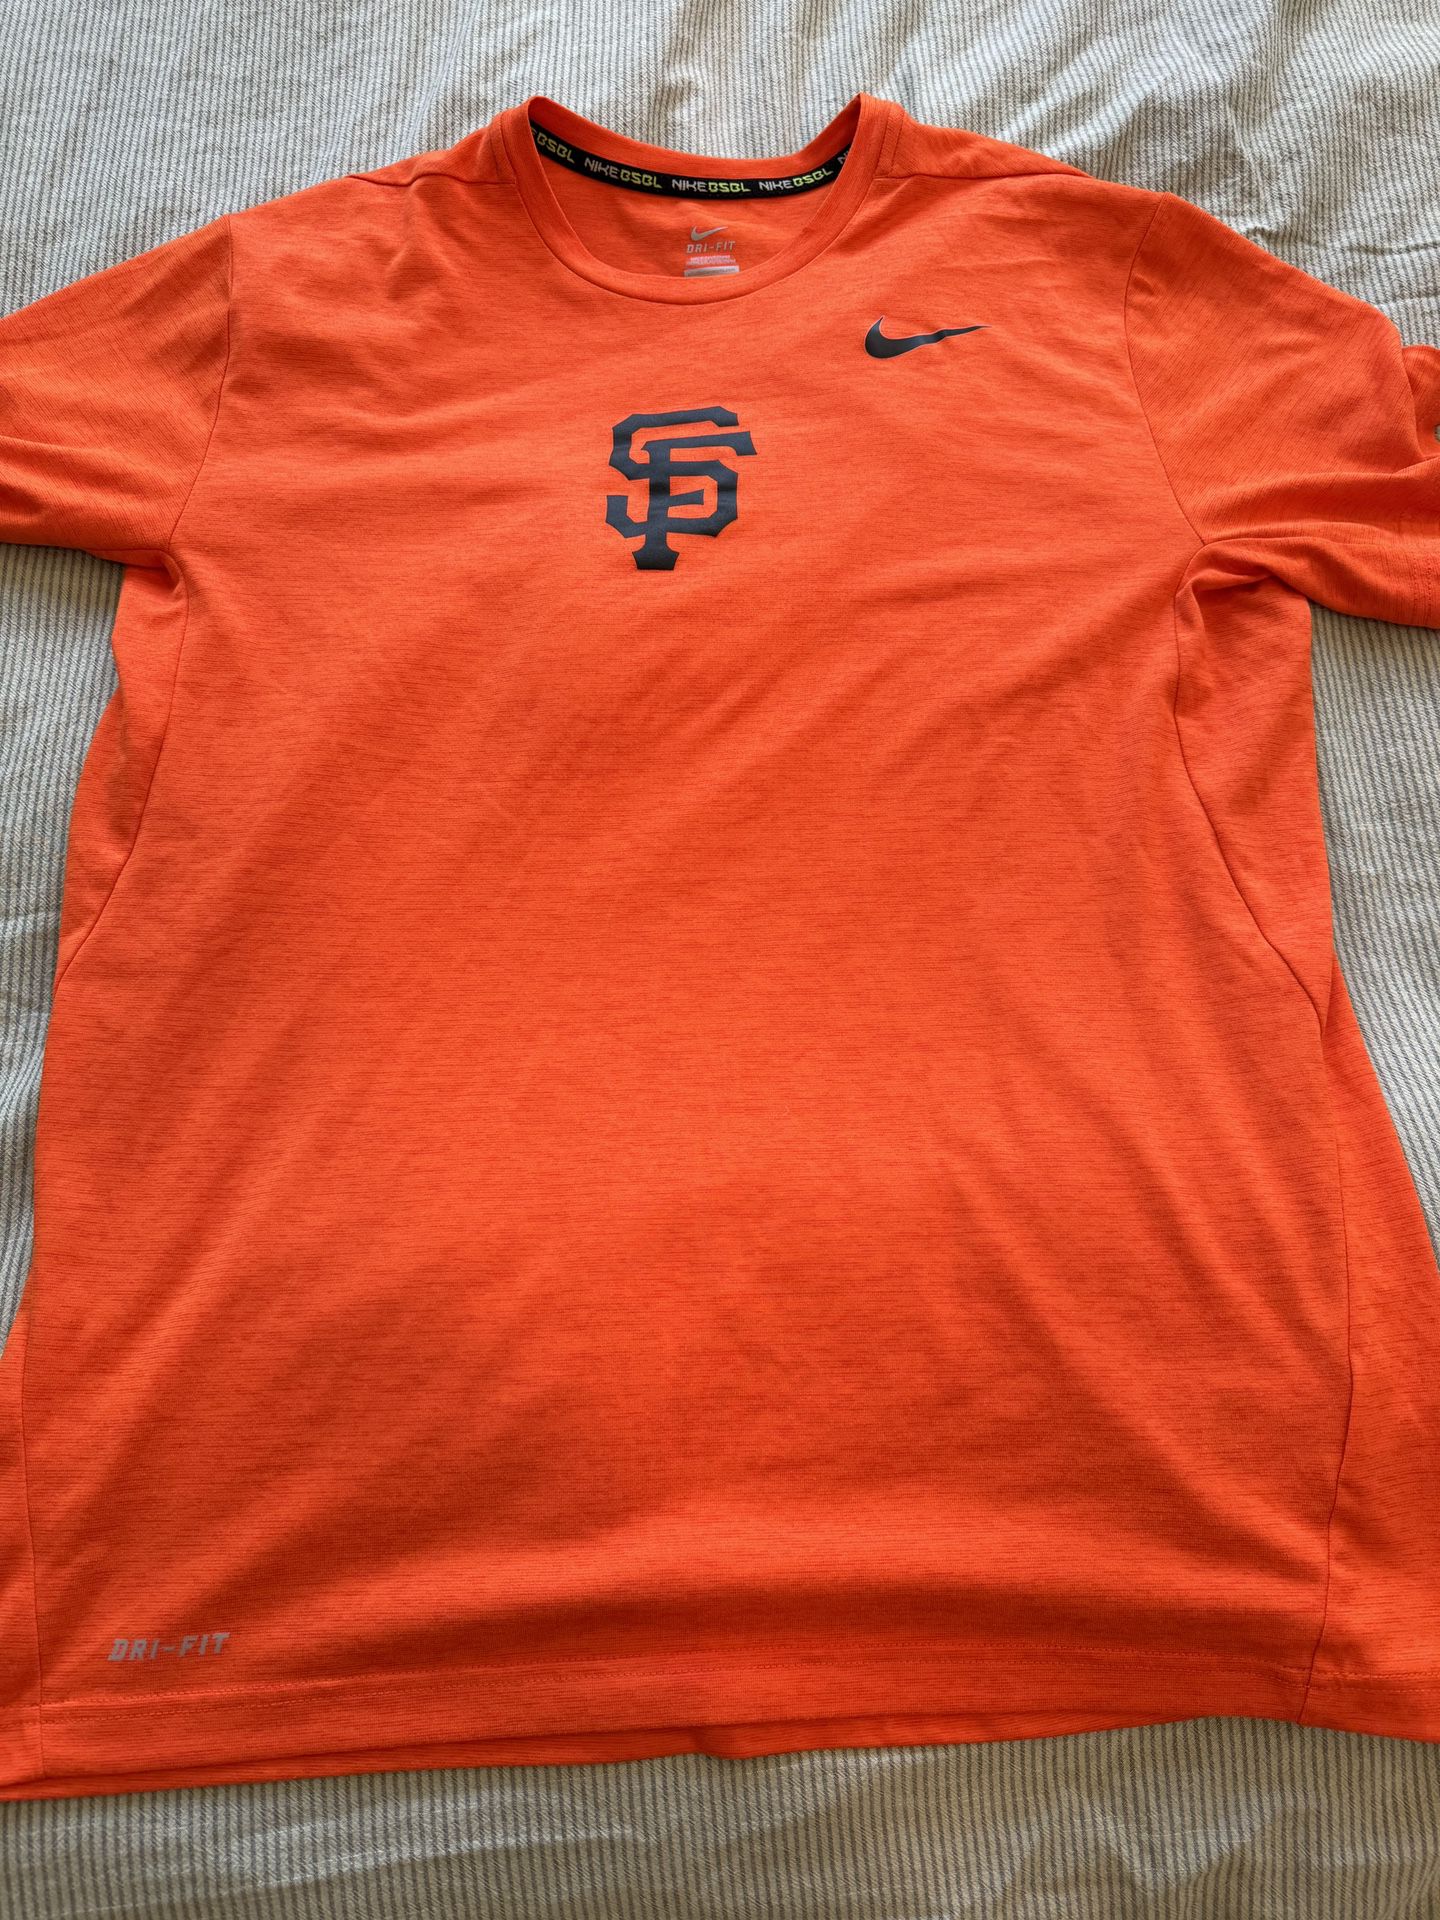 Men’s Nike Dri-Fit San Francisco Giants Shirt